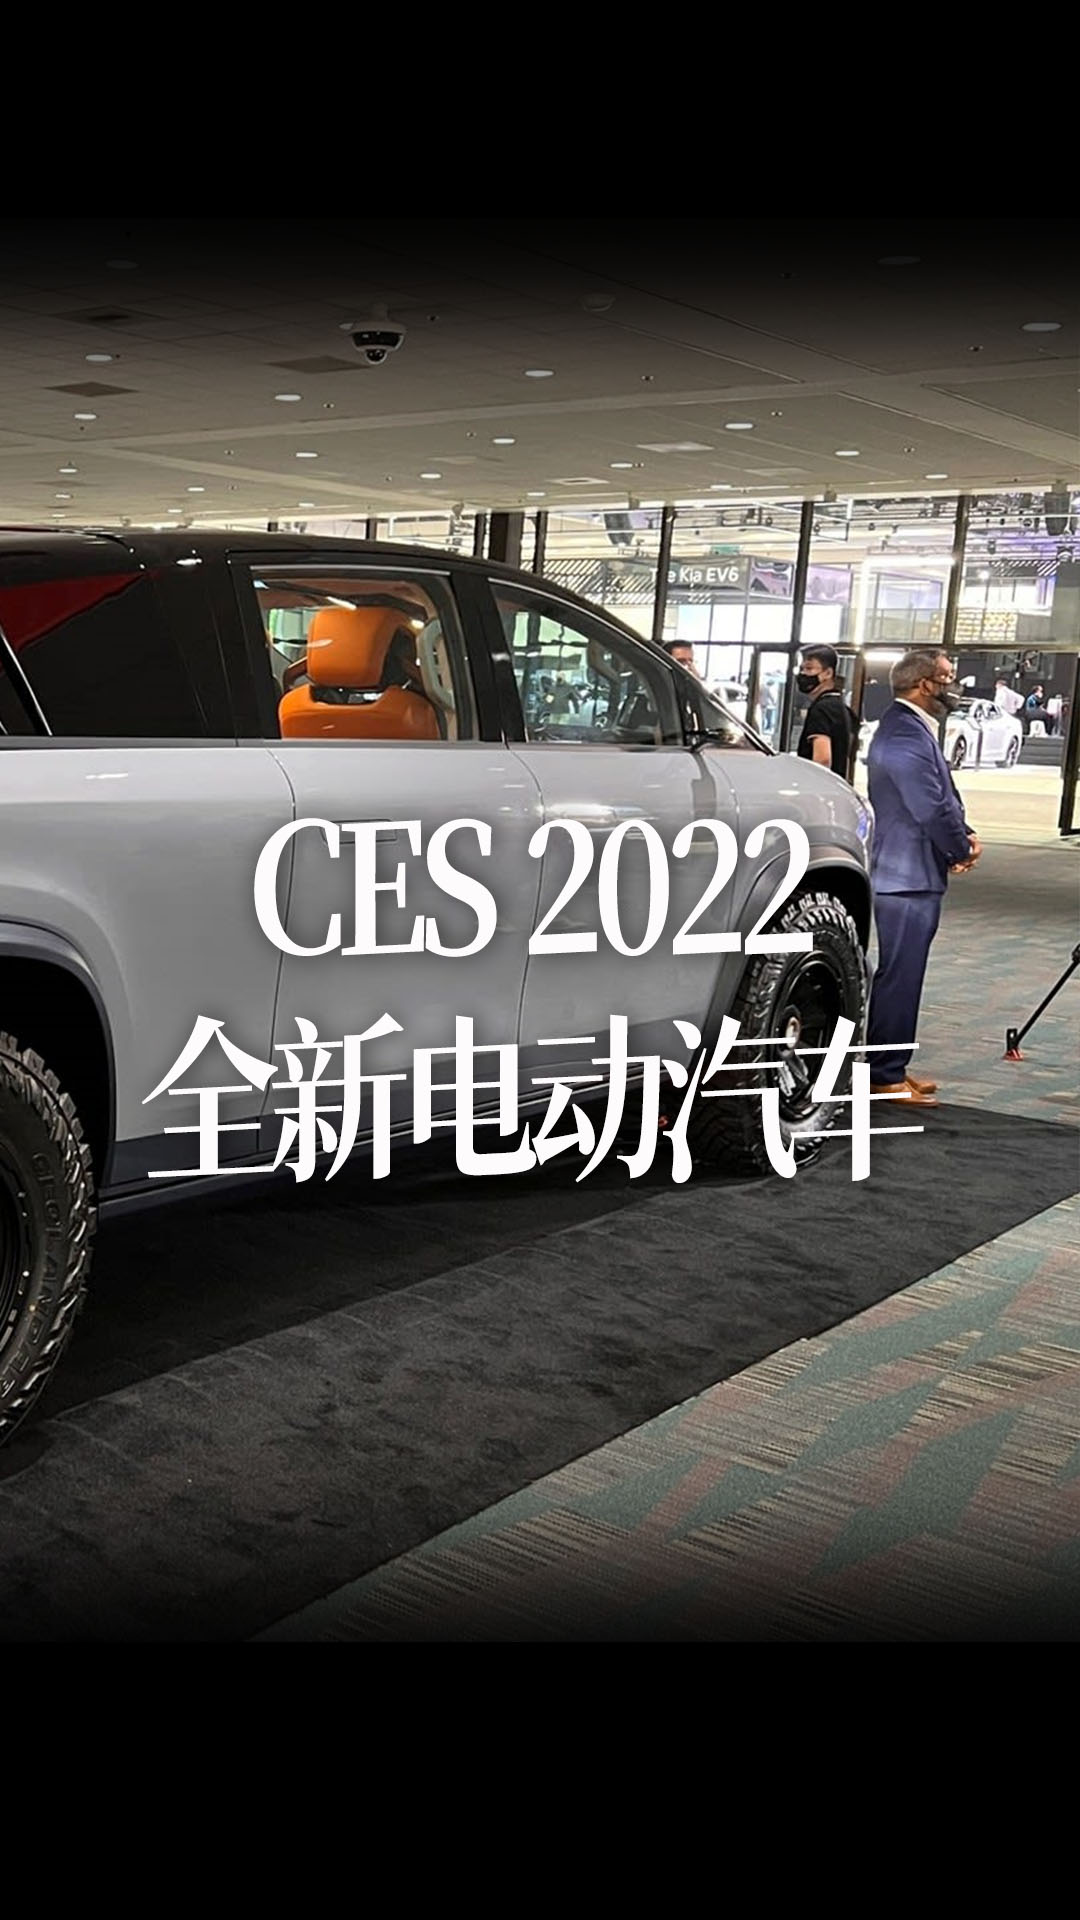 【中文】CES 2022上展示的一些全新电动汽车